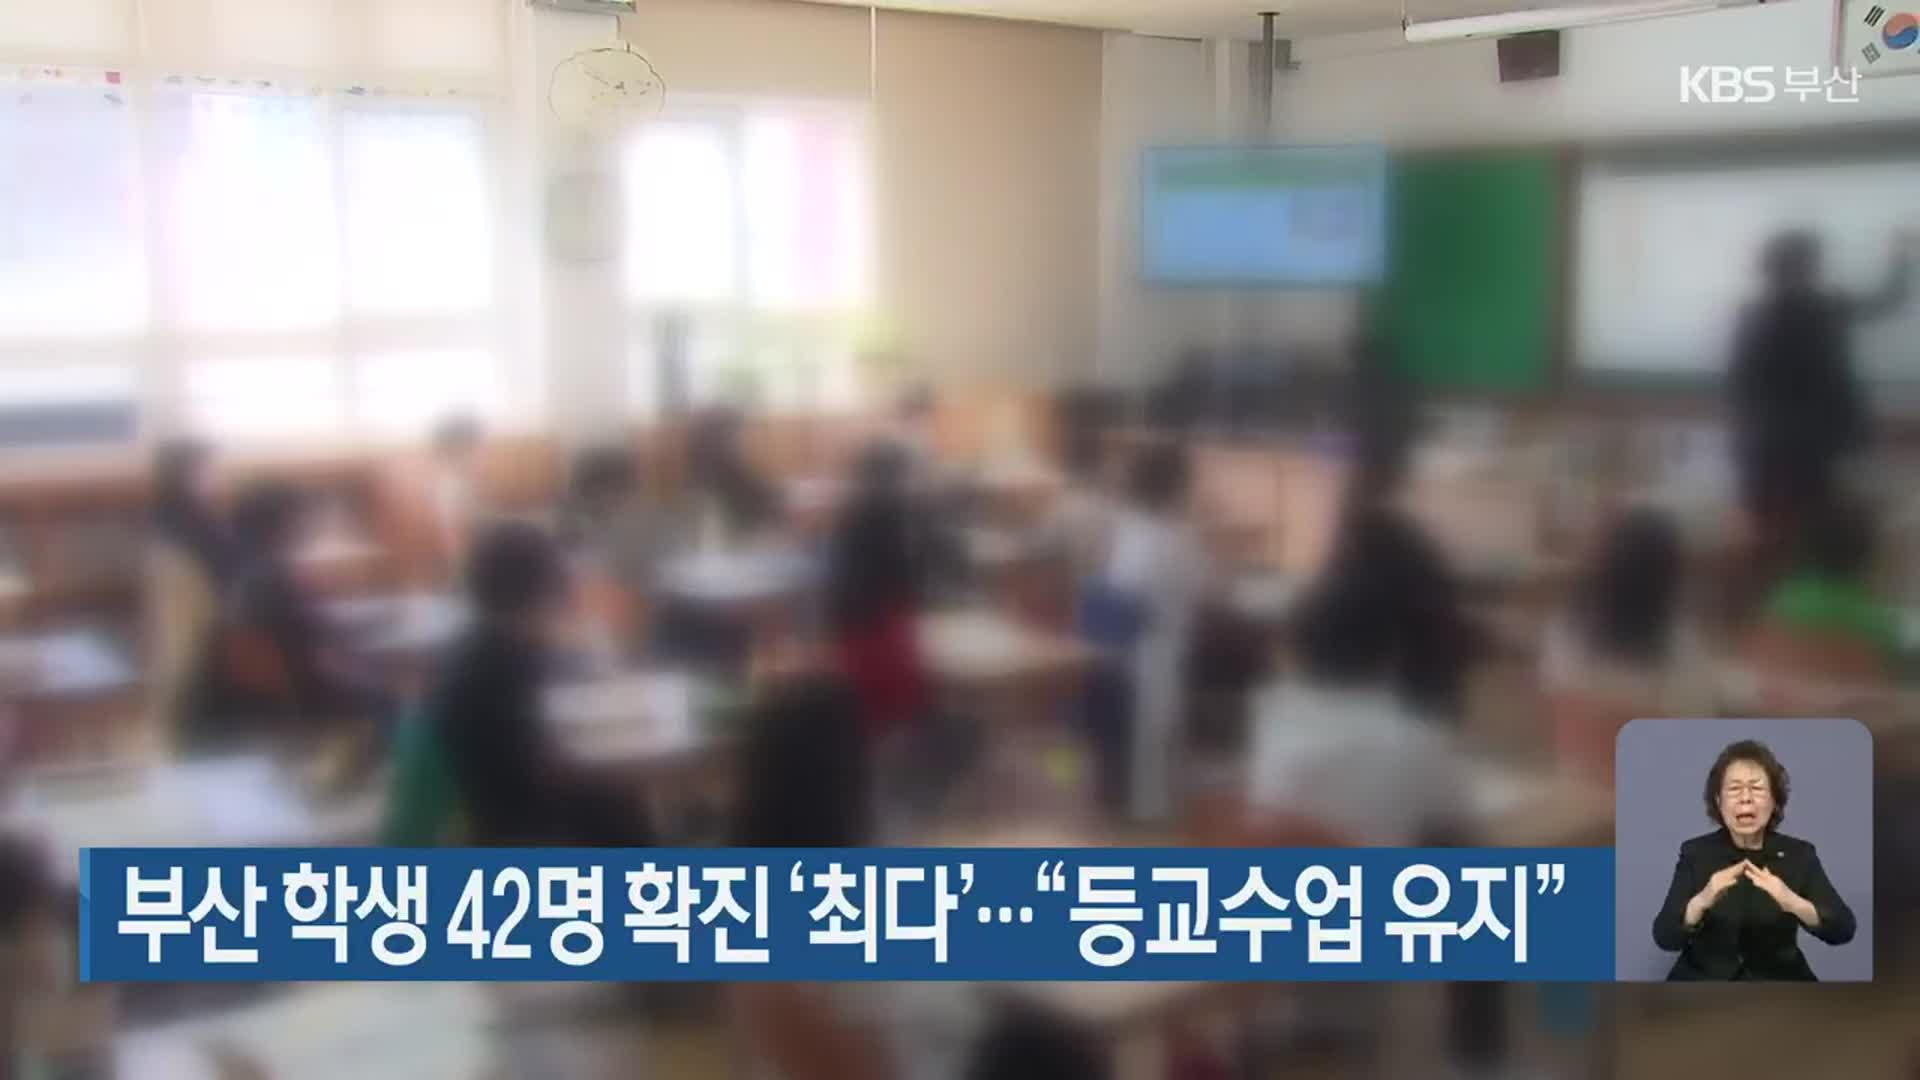 부산 학생 42명 확진 ‘최다’…“등교수업 유지”